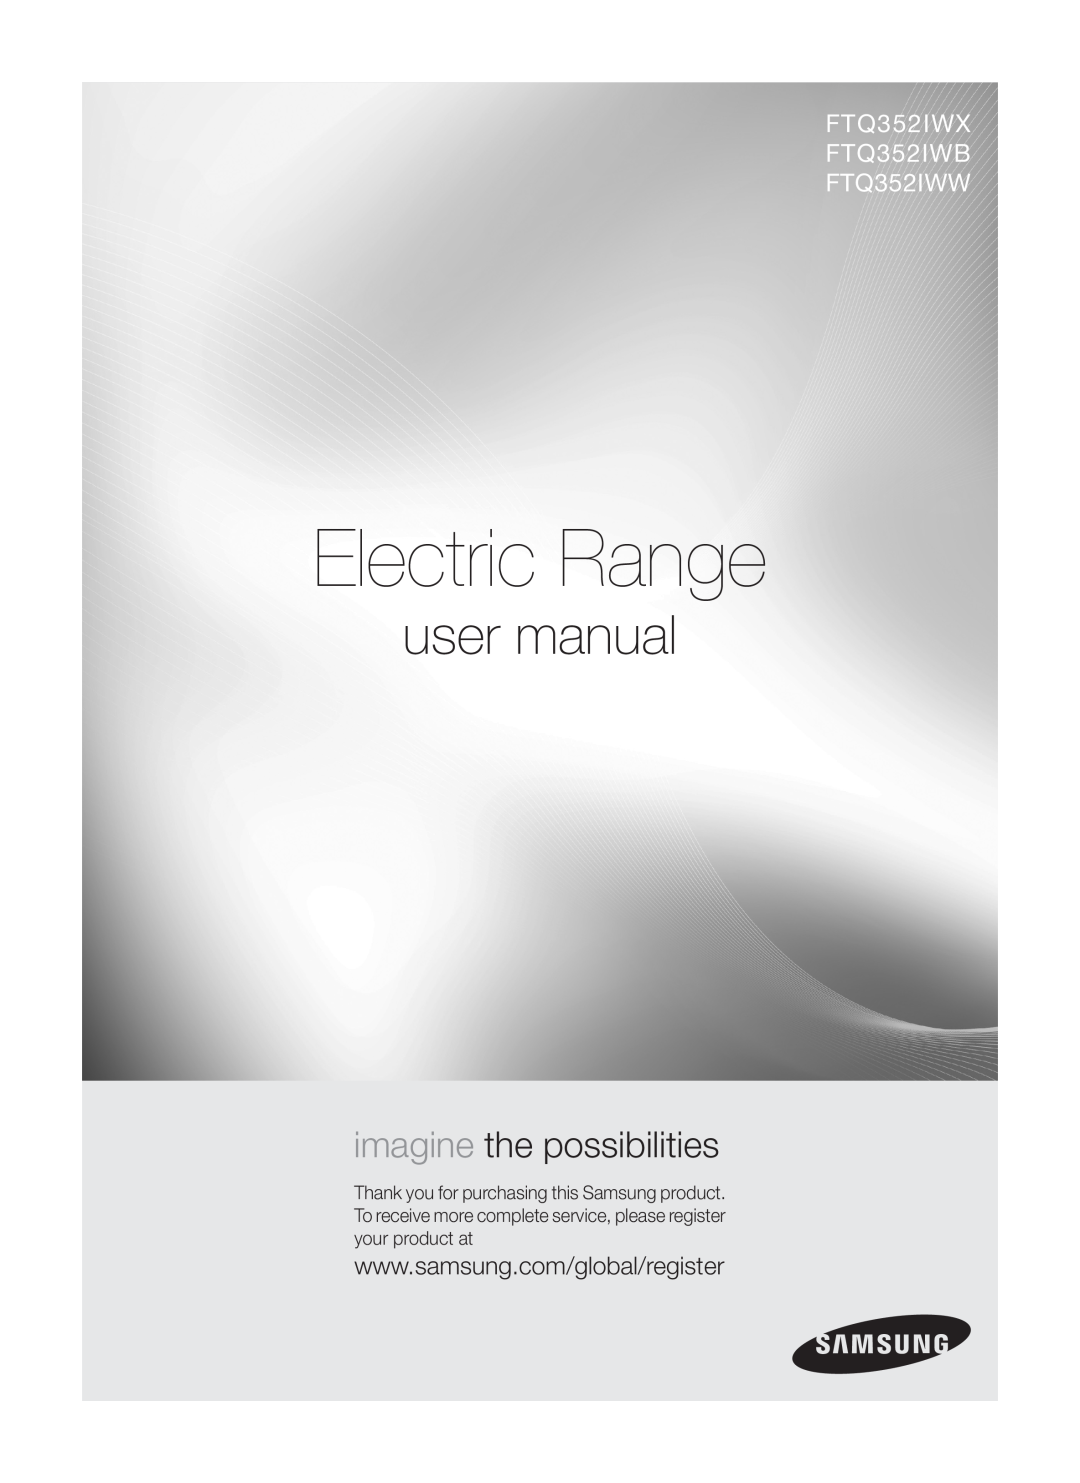 Samsung user manual Electric Range, imagine the possibilities, FTQ352IWX FTQ352IWB FTQ352IWW 